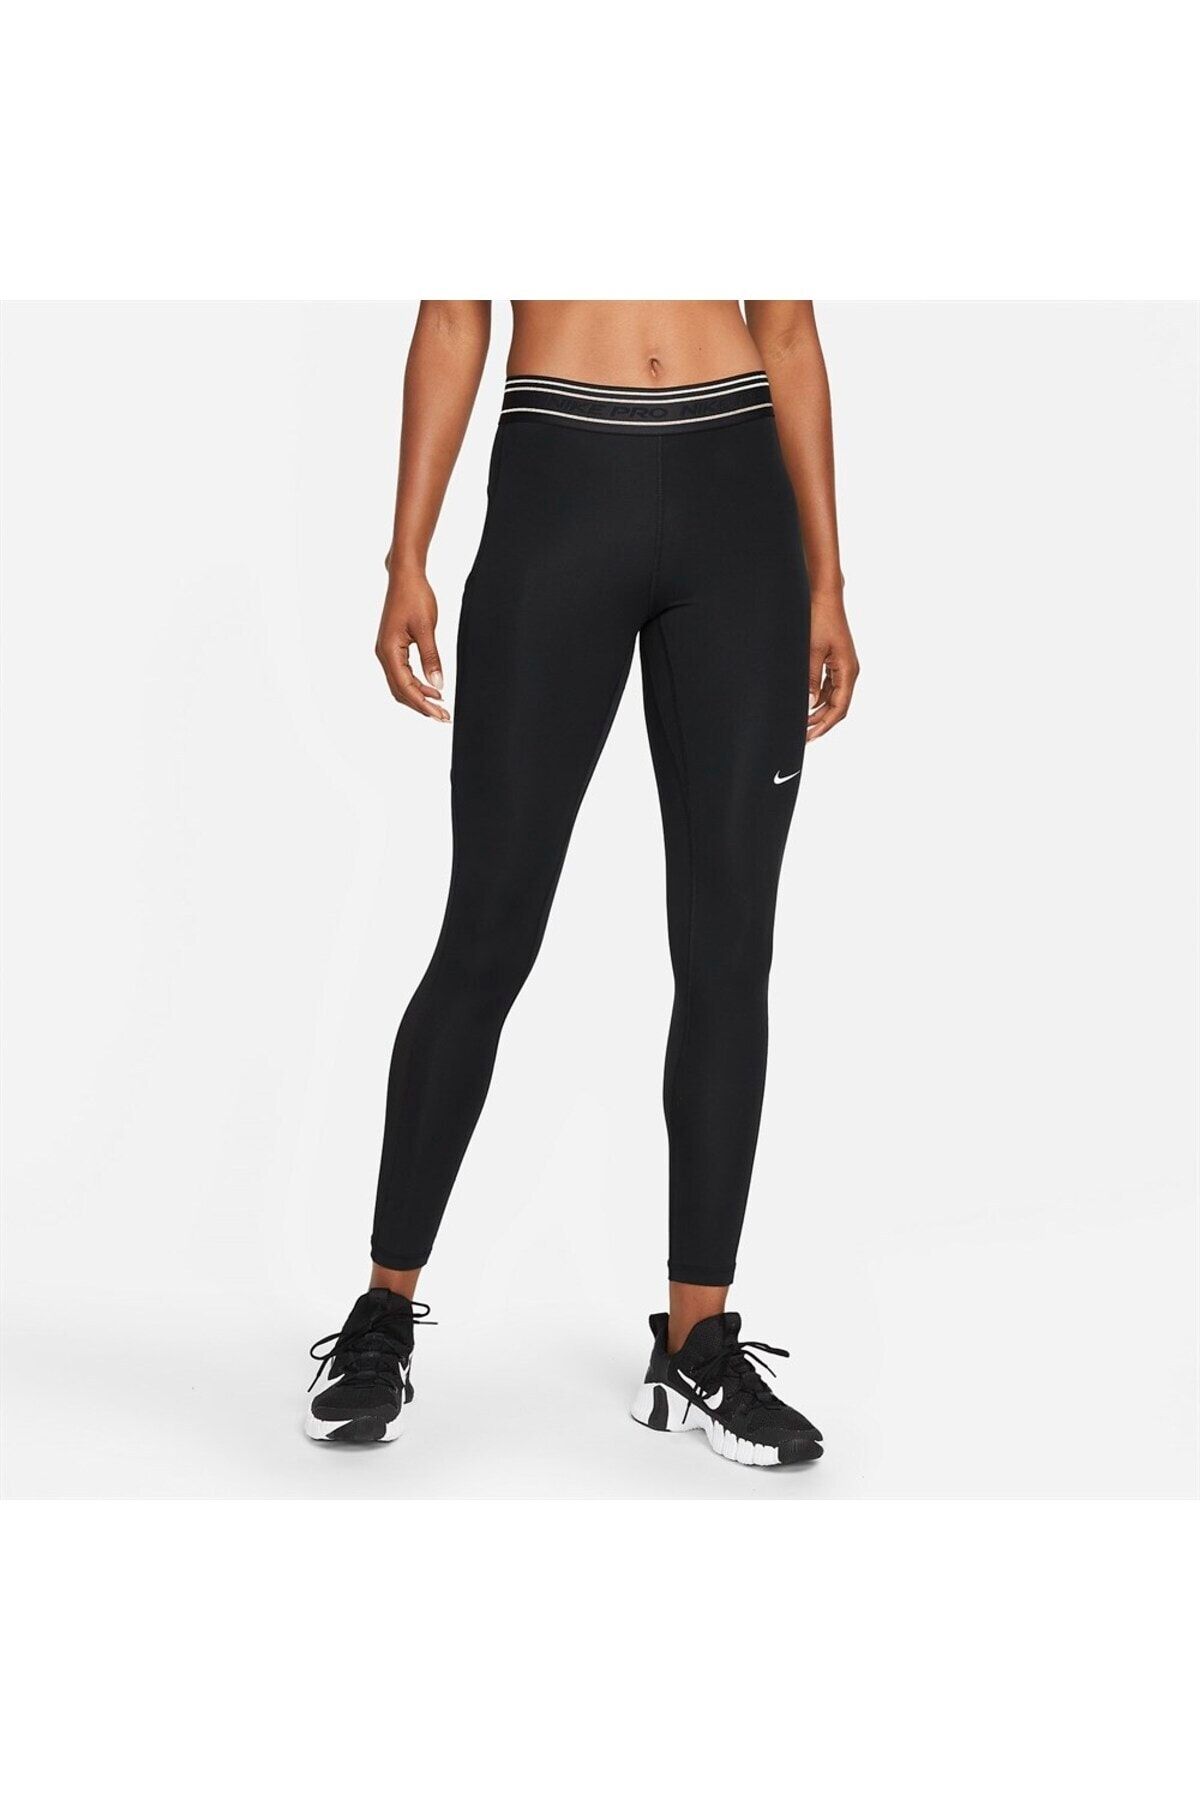 Nike Pro Dri-fit Mid-rise Graphic Leggings Women's Fitness Leggings -  Trendyol